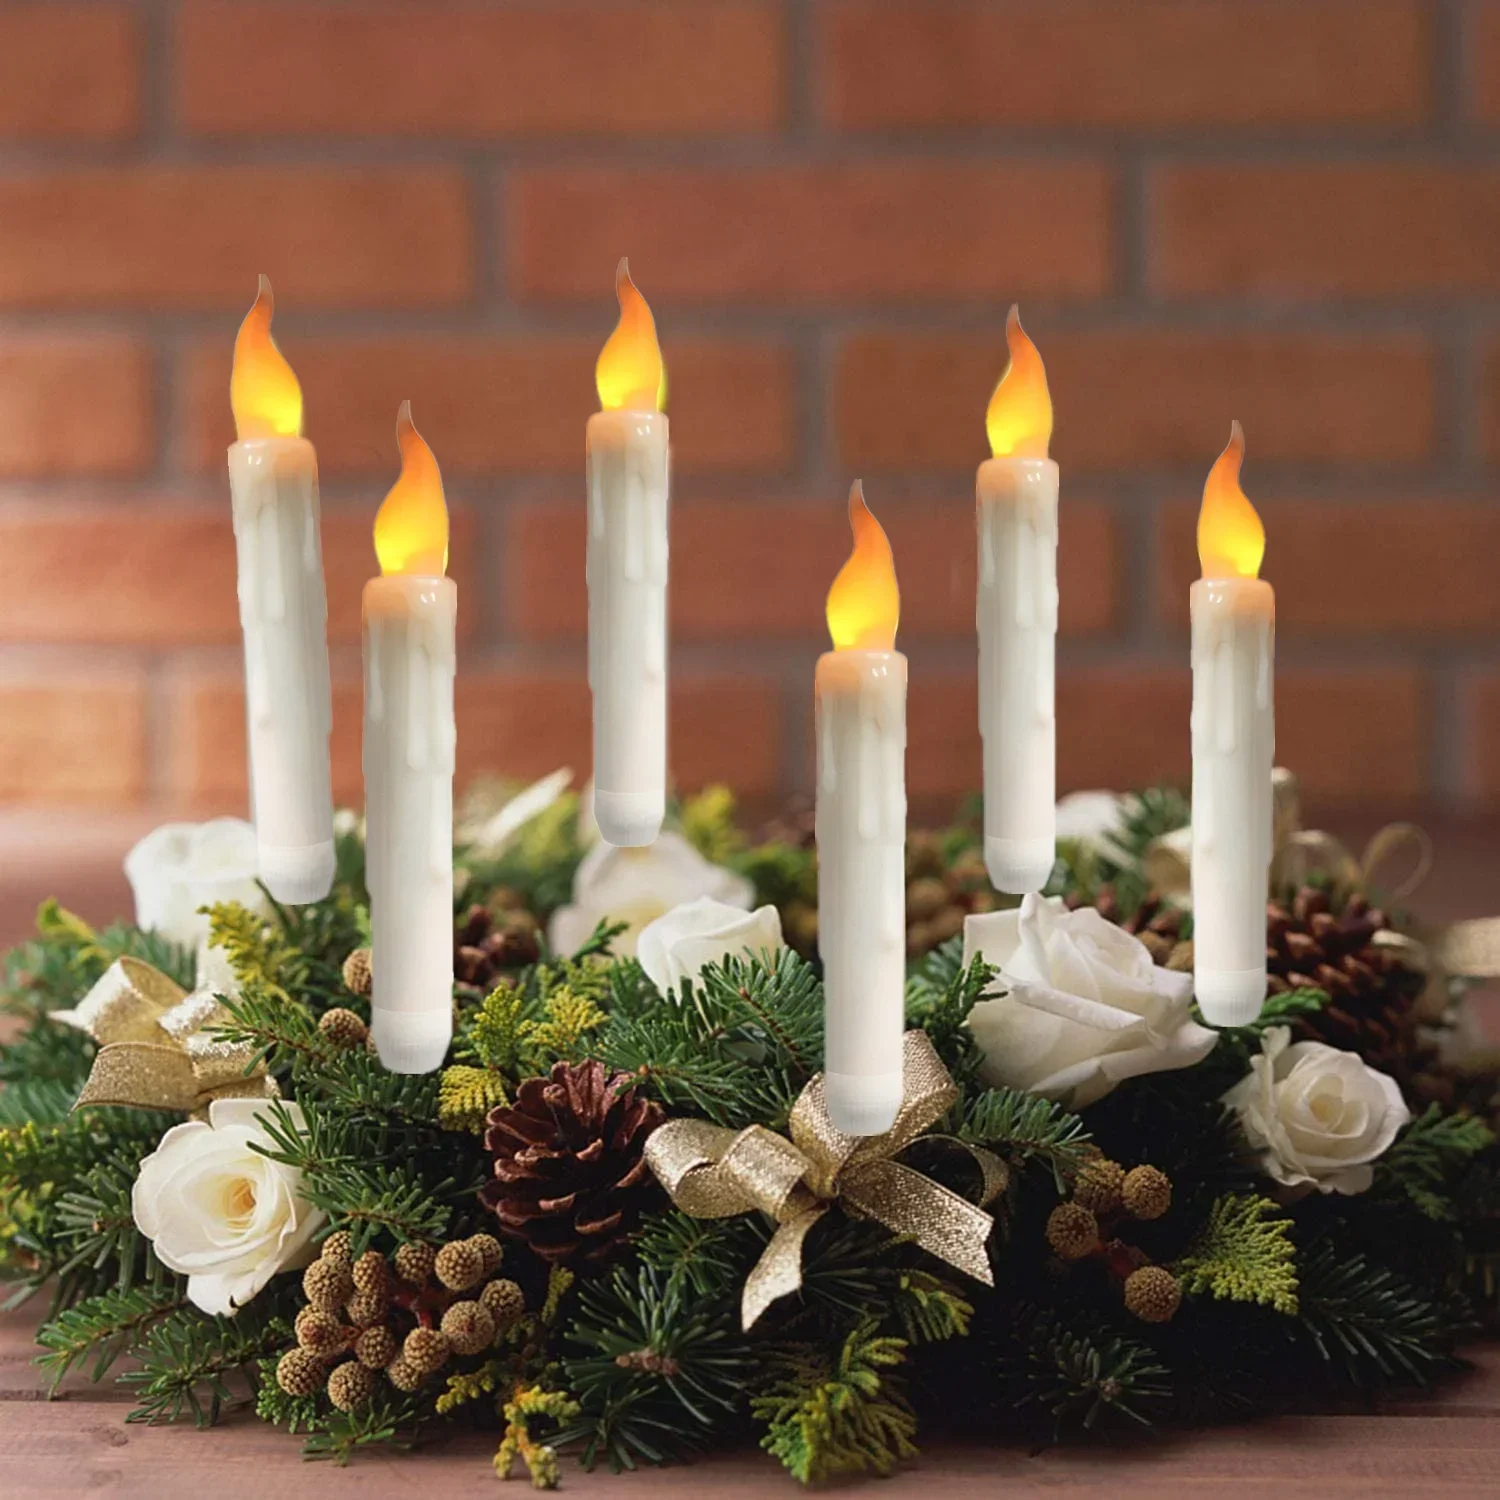 Lampe chauffe-plat sans flamme avec abat-jour en papier, LED Tytive, à  piles, ci-après les, mariage, Leon, Halloween, Noël